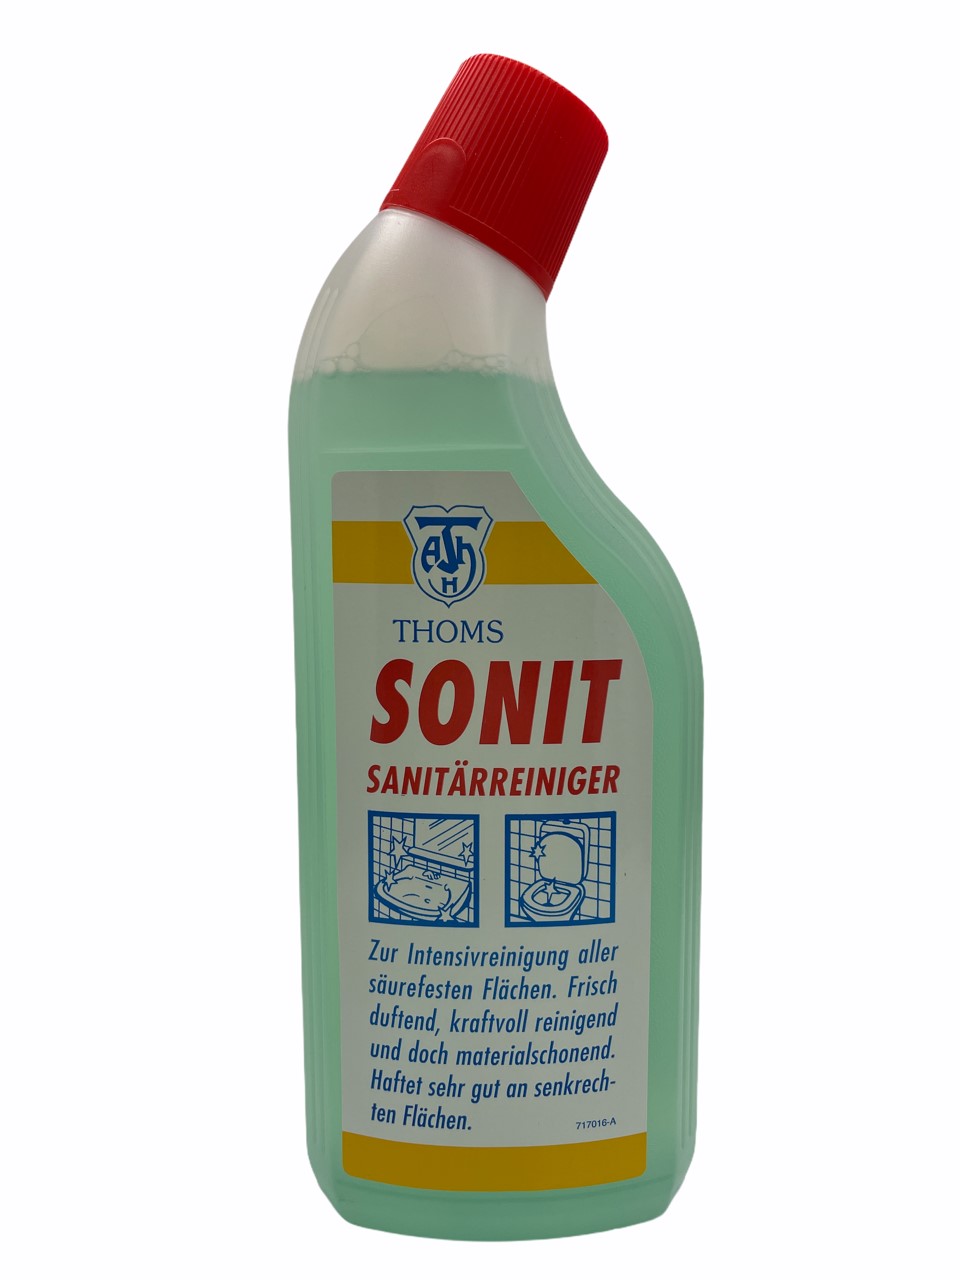 THOMS SONIT Sanitärreiniger 750 ml Ente